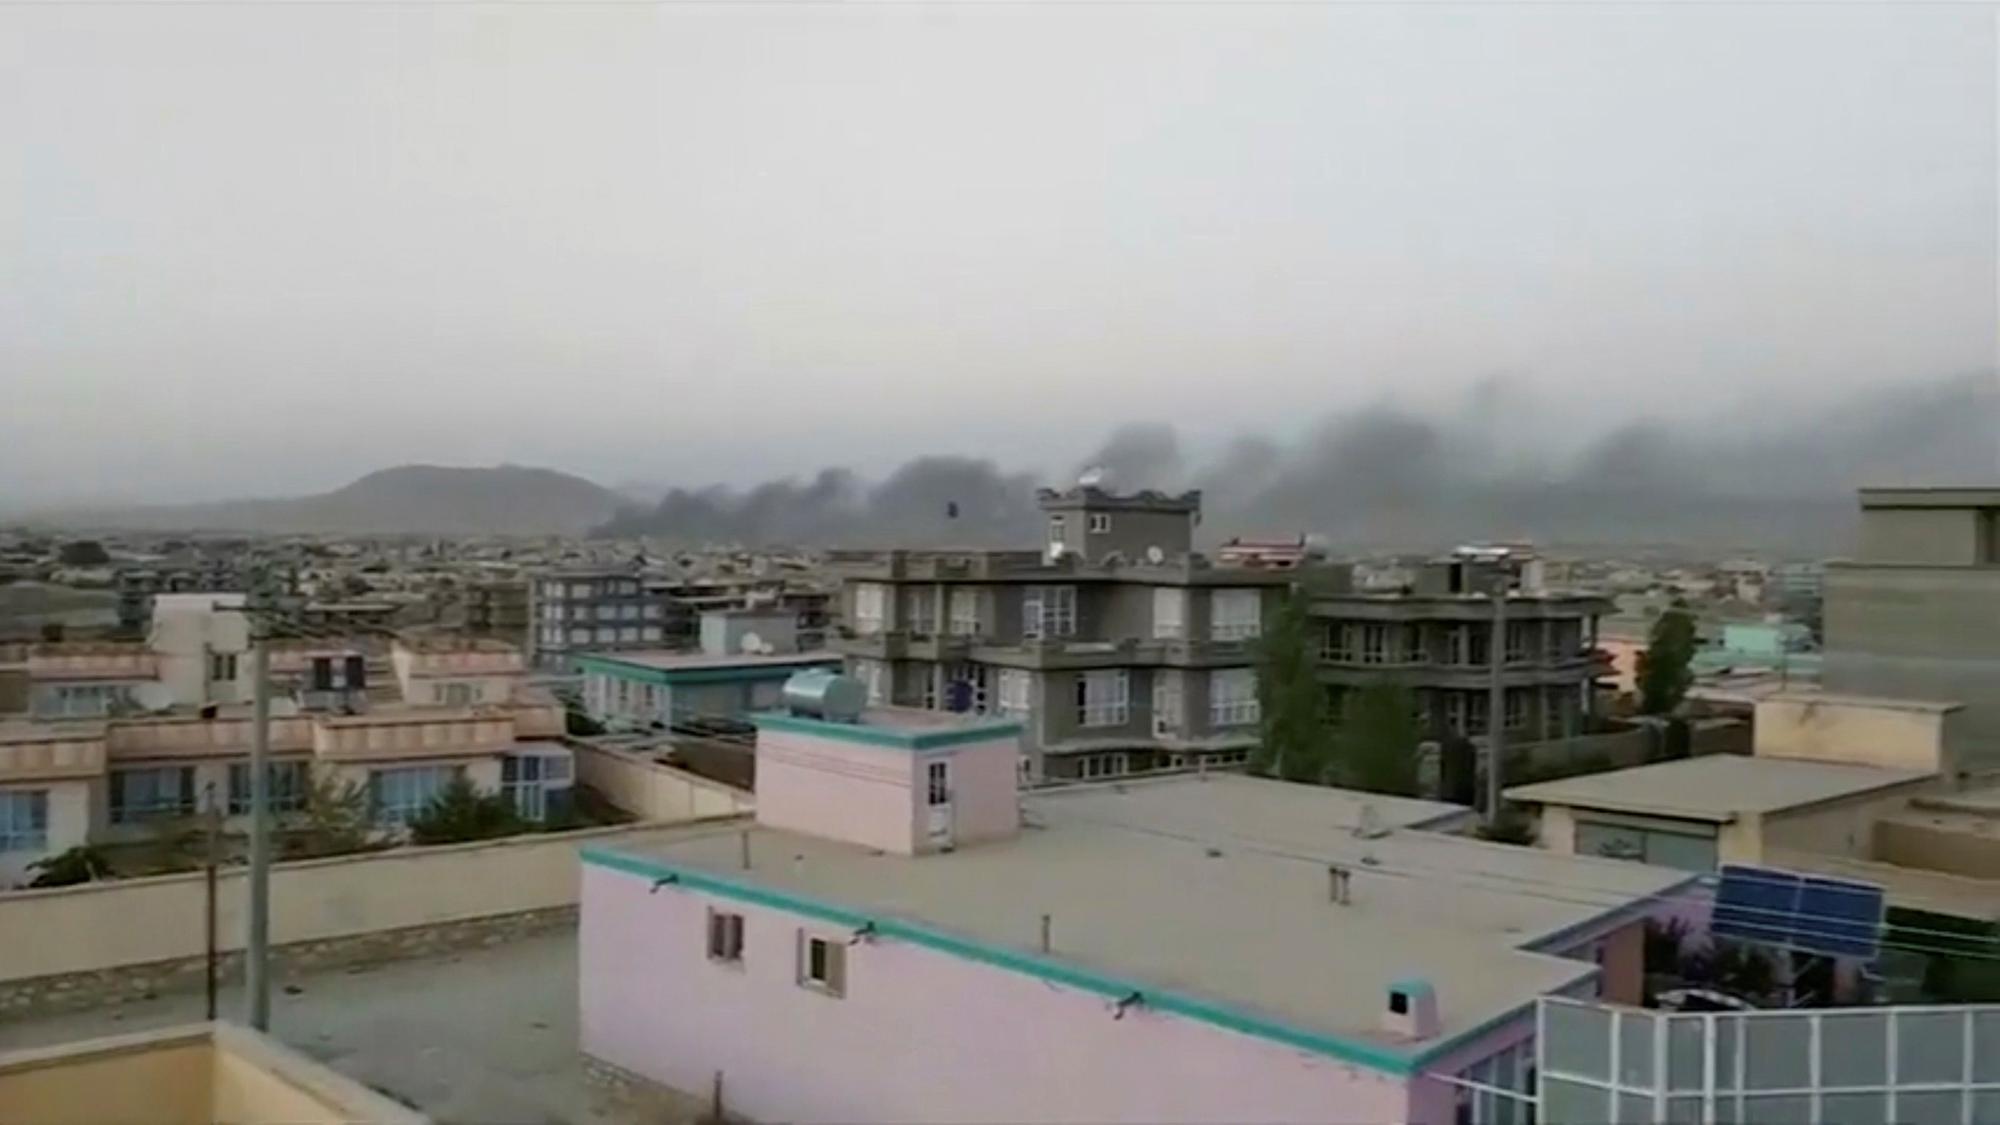 La ville afghane de Ghazni a été prise par les talibans, qui se rapprochent de Kaboul. [Reuters - Ariana news]